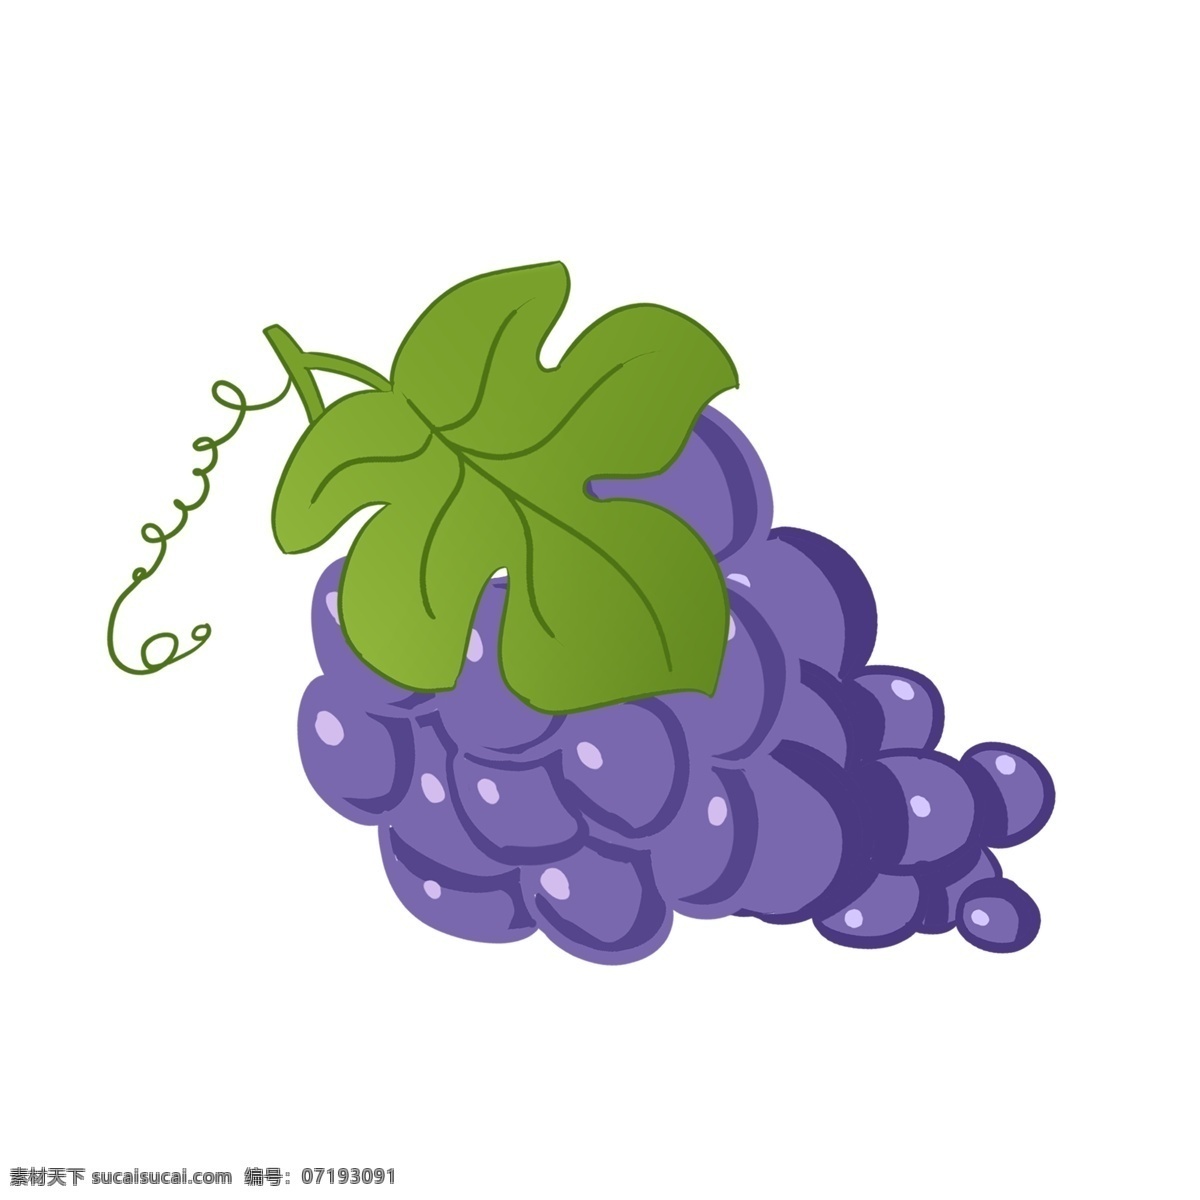 紫色 成熟 长 串 葡萄 绿叶 酸甜 可口 浆果 水分 开胃 酿酒 藤本植物 水果 过节 果盘 食用